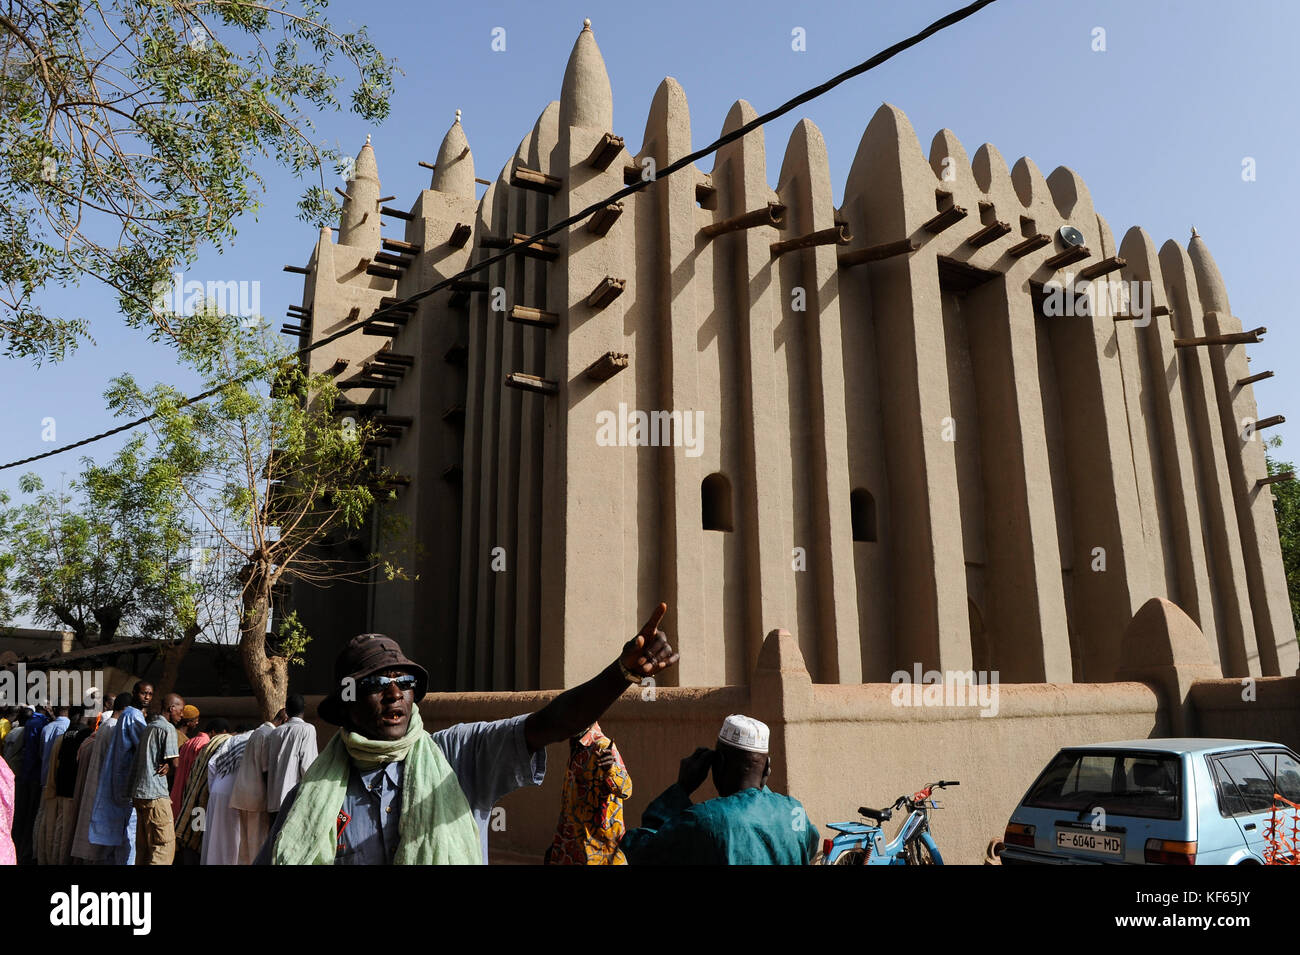 MALI Mopti, der Großen Moschee, ein Irdenes Struktur in der traditionellen Sudanesischen Stil zwischen 1936 und 1943 erbaut, wird allgemein als die Moschee von Komoguel, Rebuild von Aga Khan Foundation, UNESCO-Weltkulturerbe, Freitag Gebet/Grosse Moschee aus Lehm ist UNESCO Weltkulturerbe Stockfoto